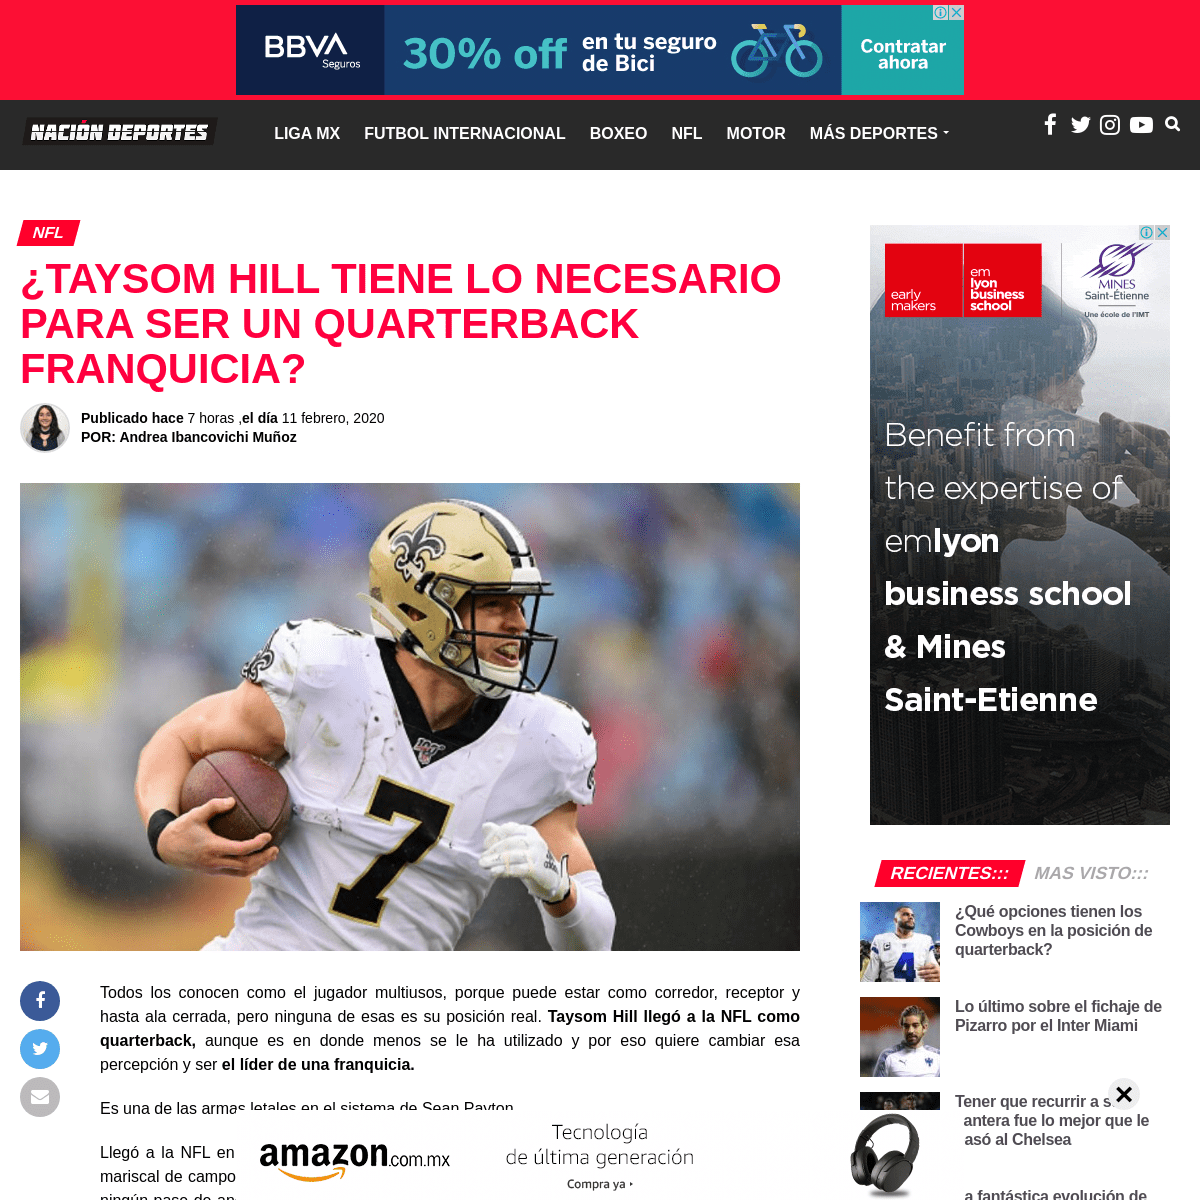 A complete backup of naciondeportes.com/taysom-hill-quiere-ser-quarterback-franquicia/